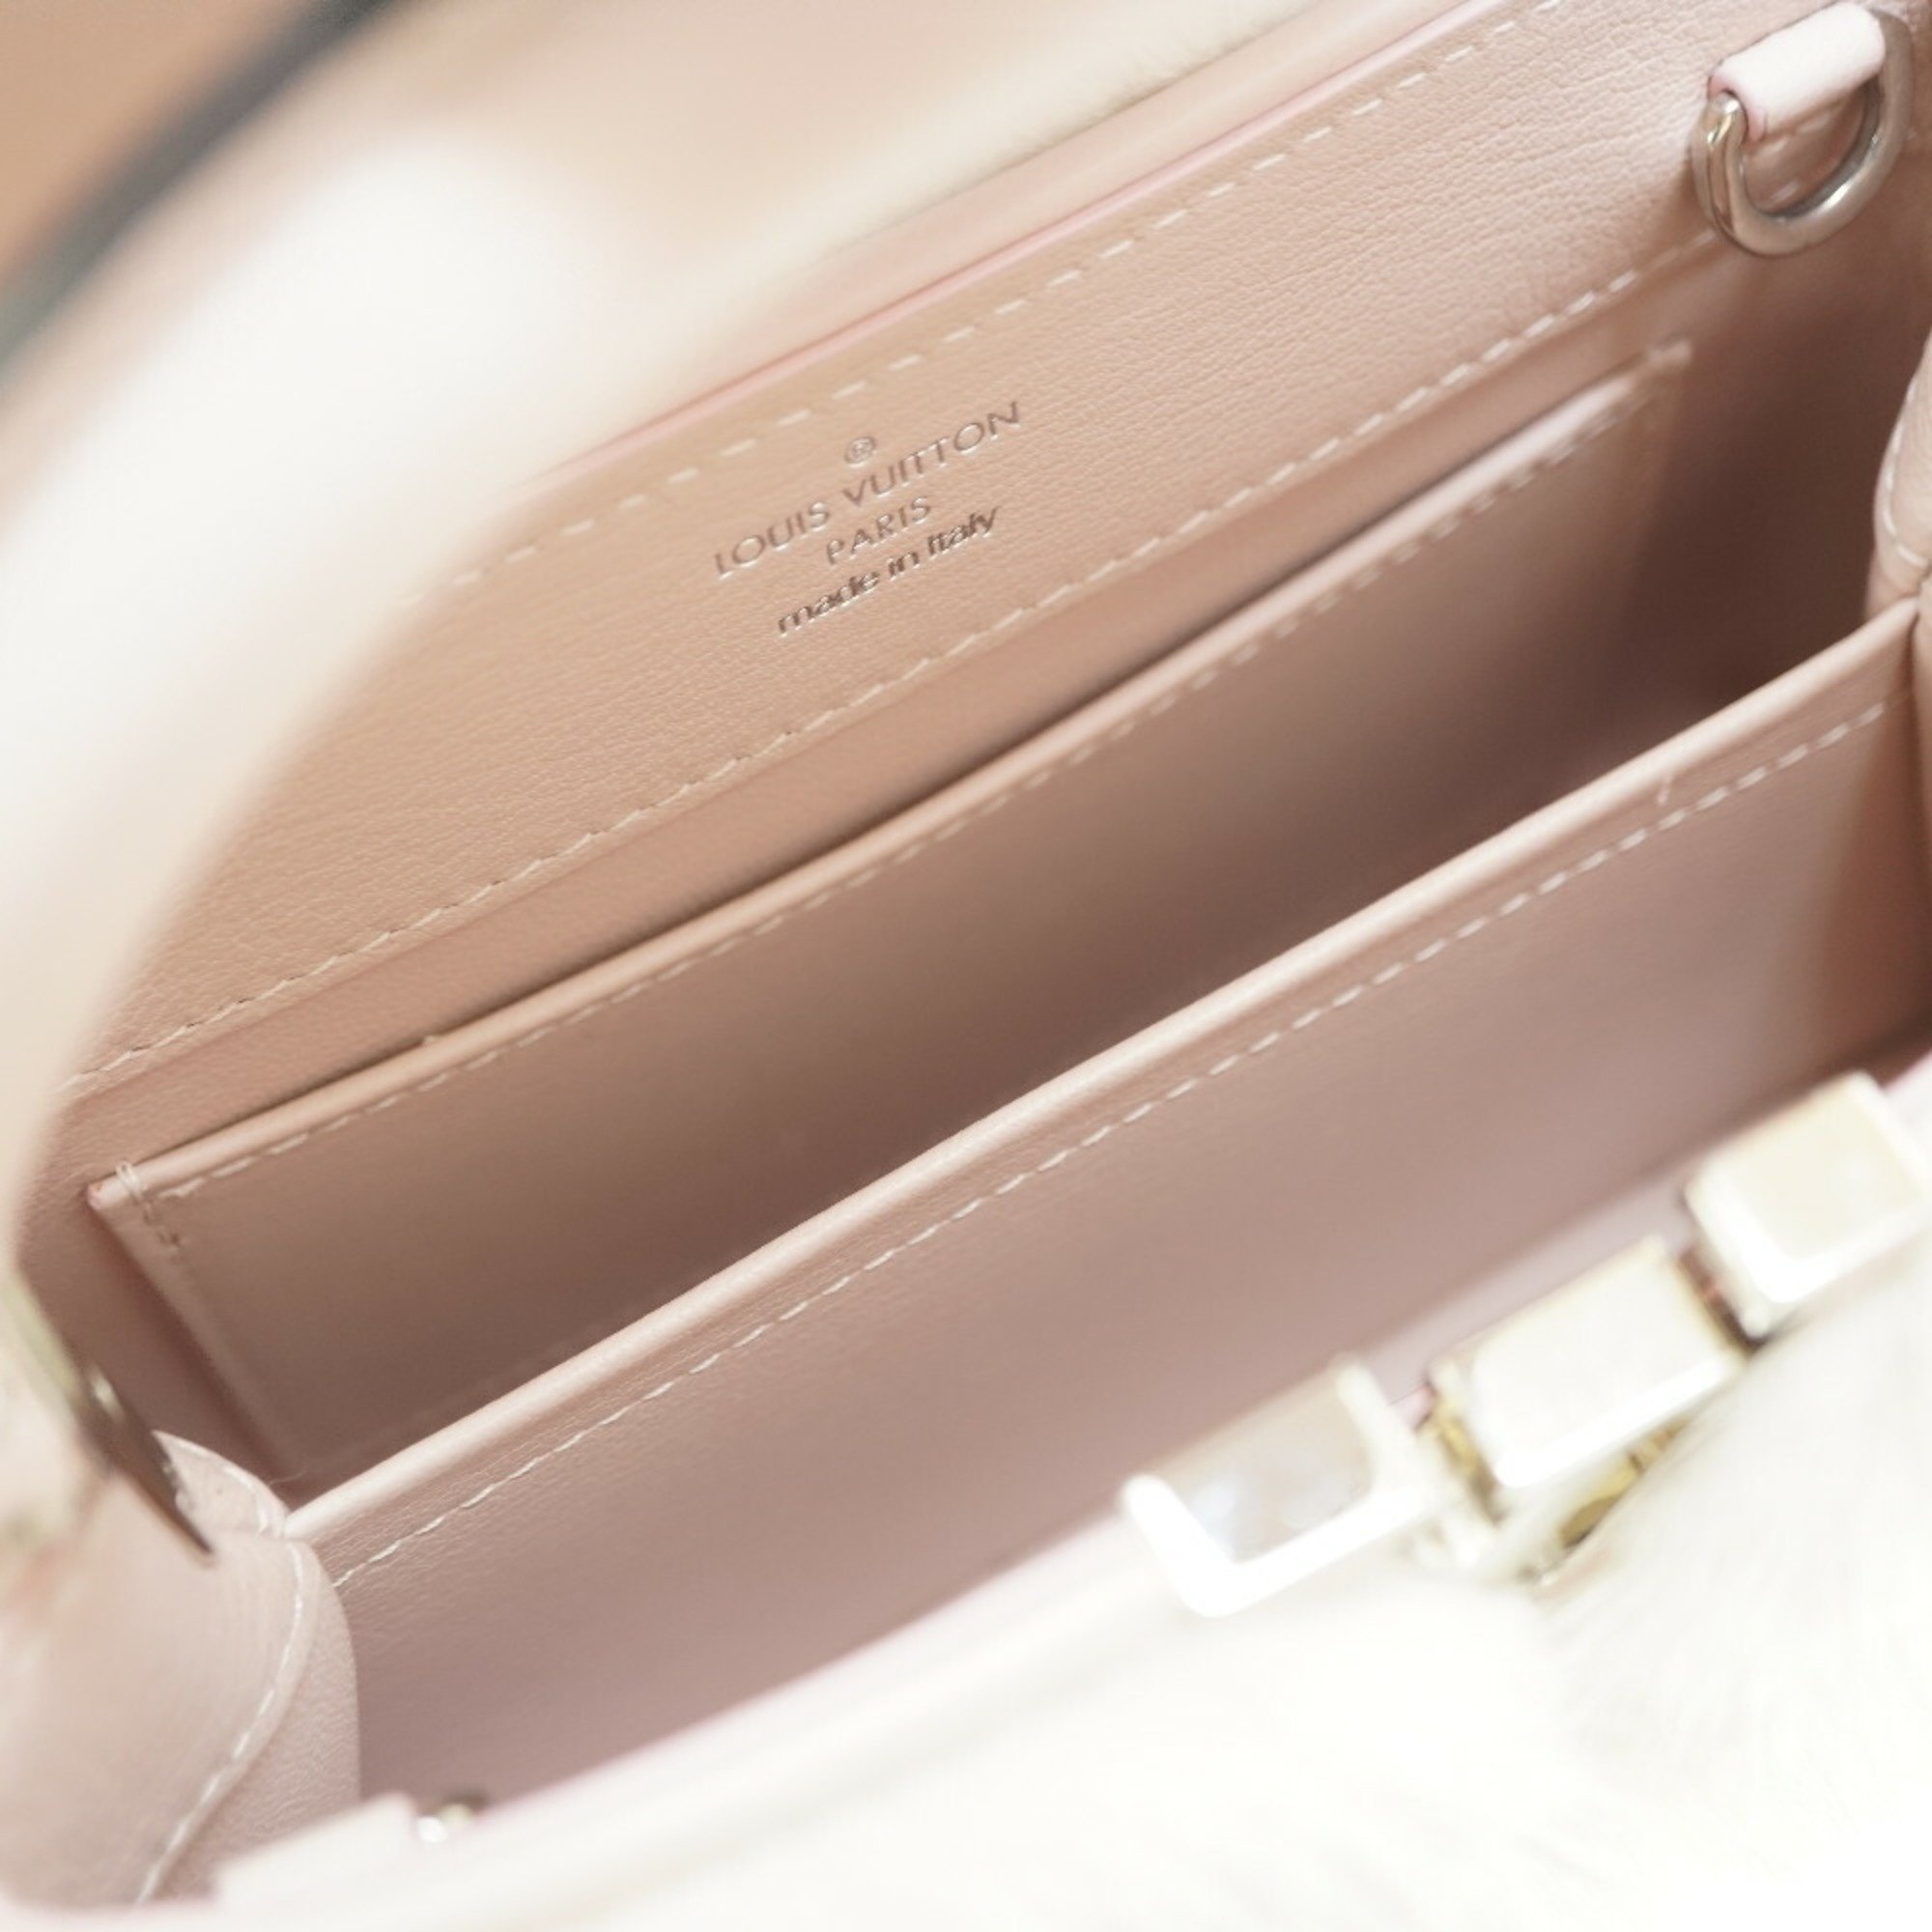 Louis Vuitton Capucines Mink M56916 Shoulder Handbag Pink LV 0051LOUIS VUITTON with shoulder strap